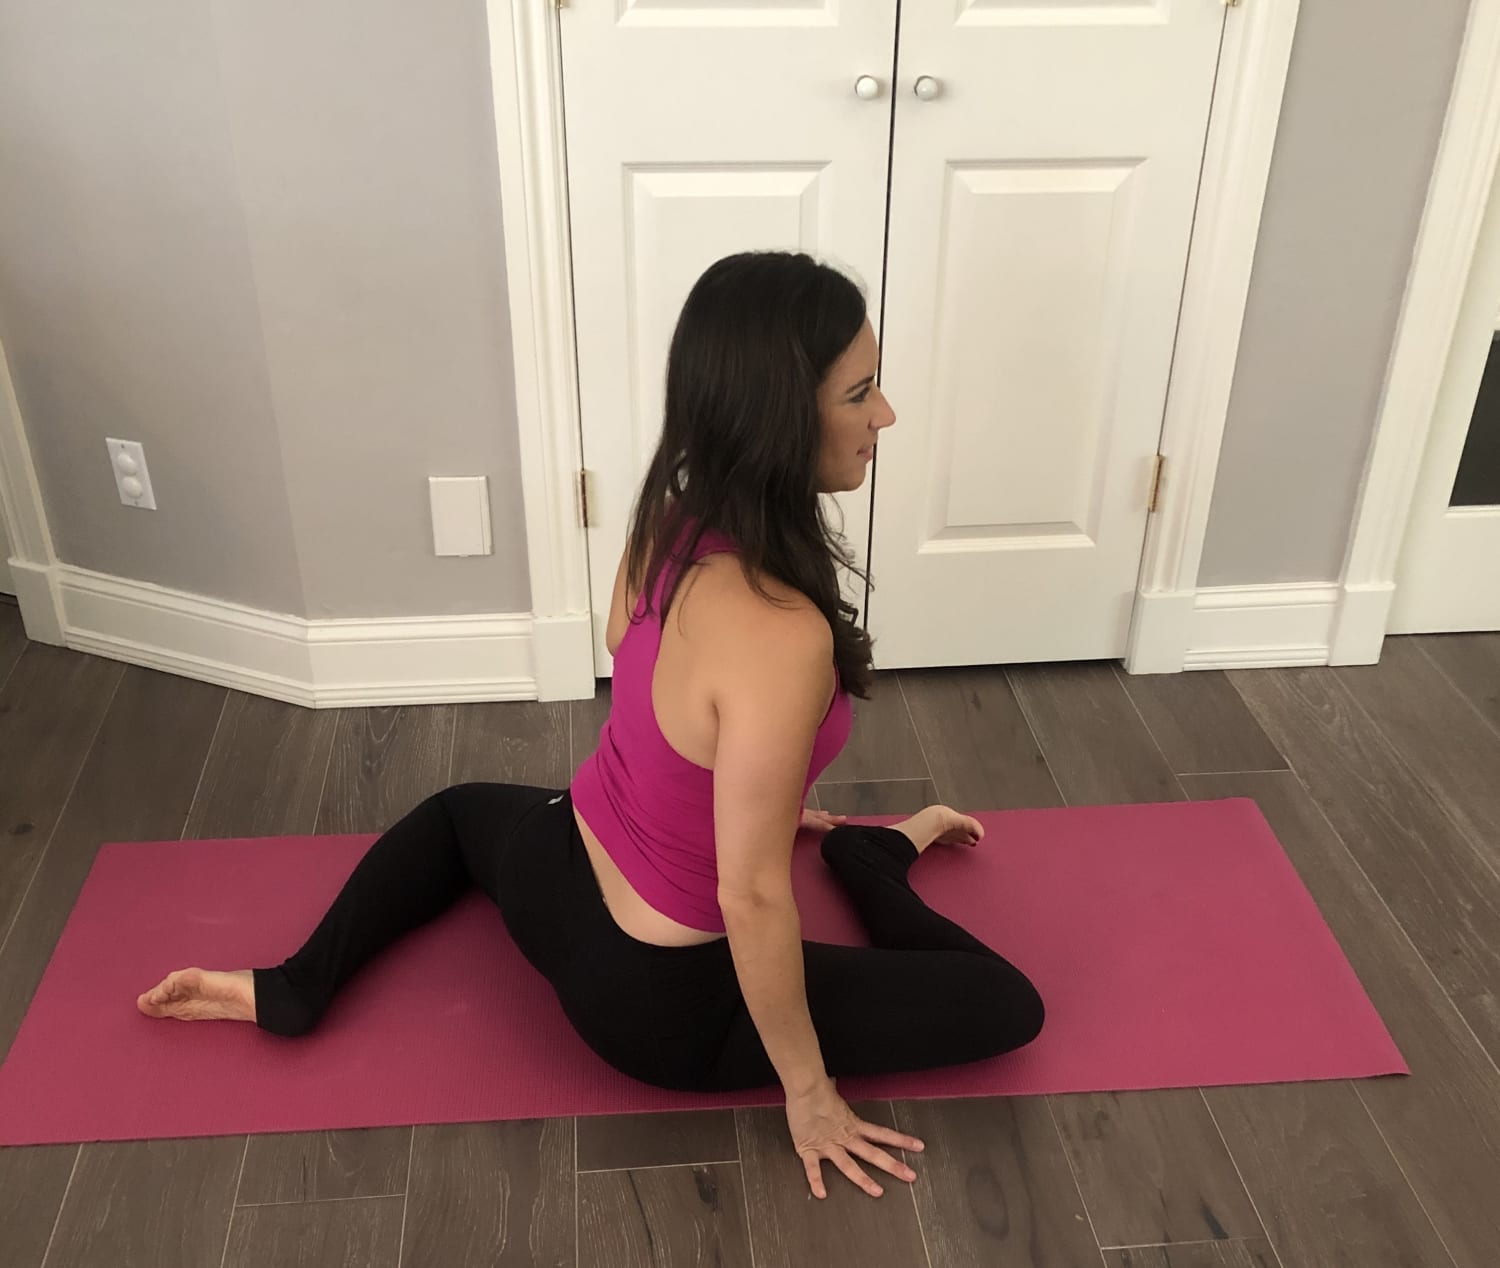 Hip flexor exercises: Stretches to strengthen